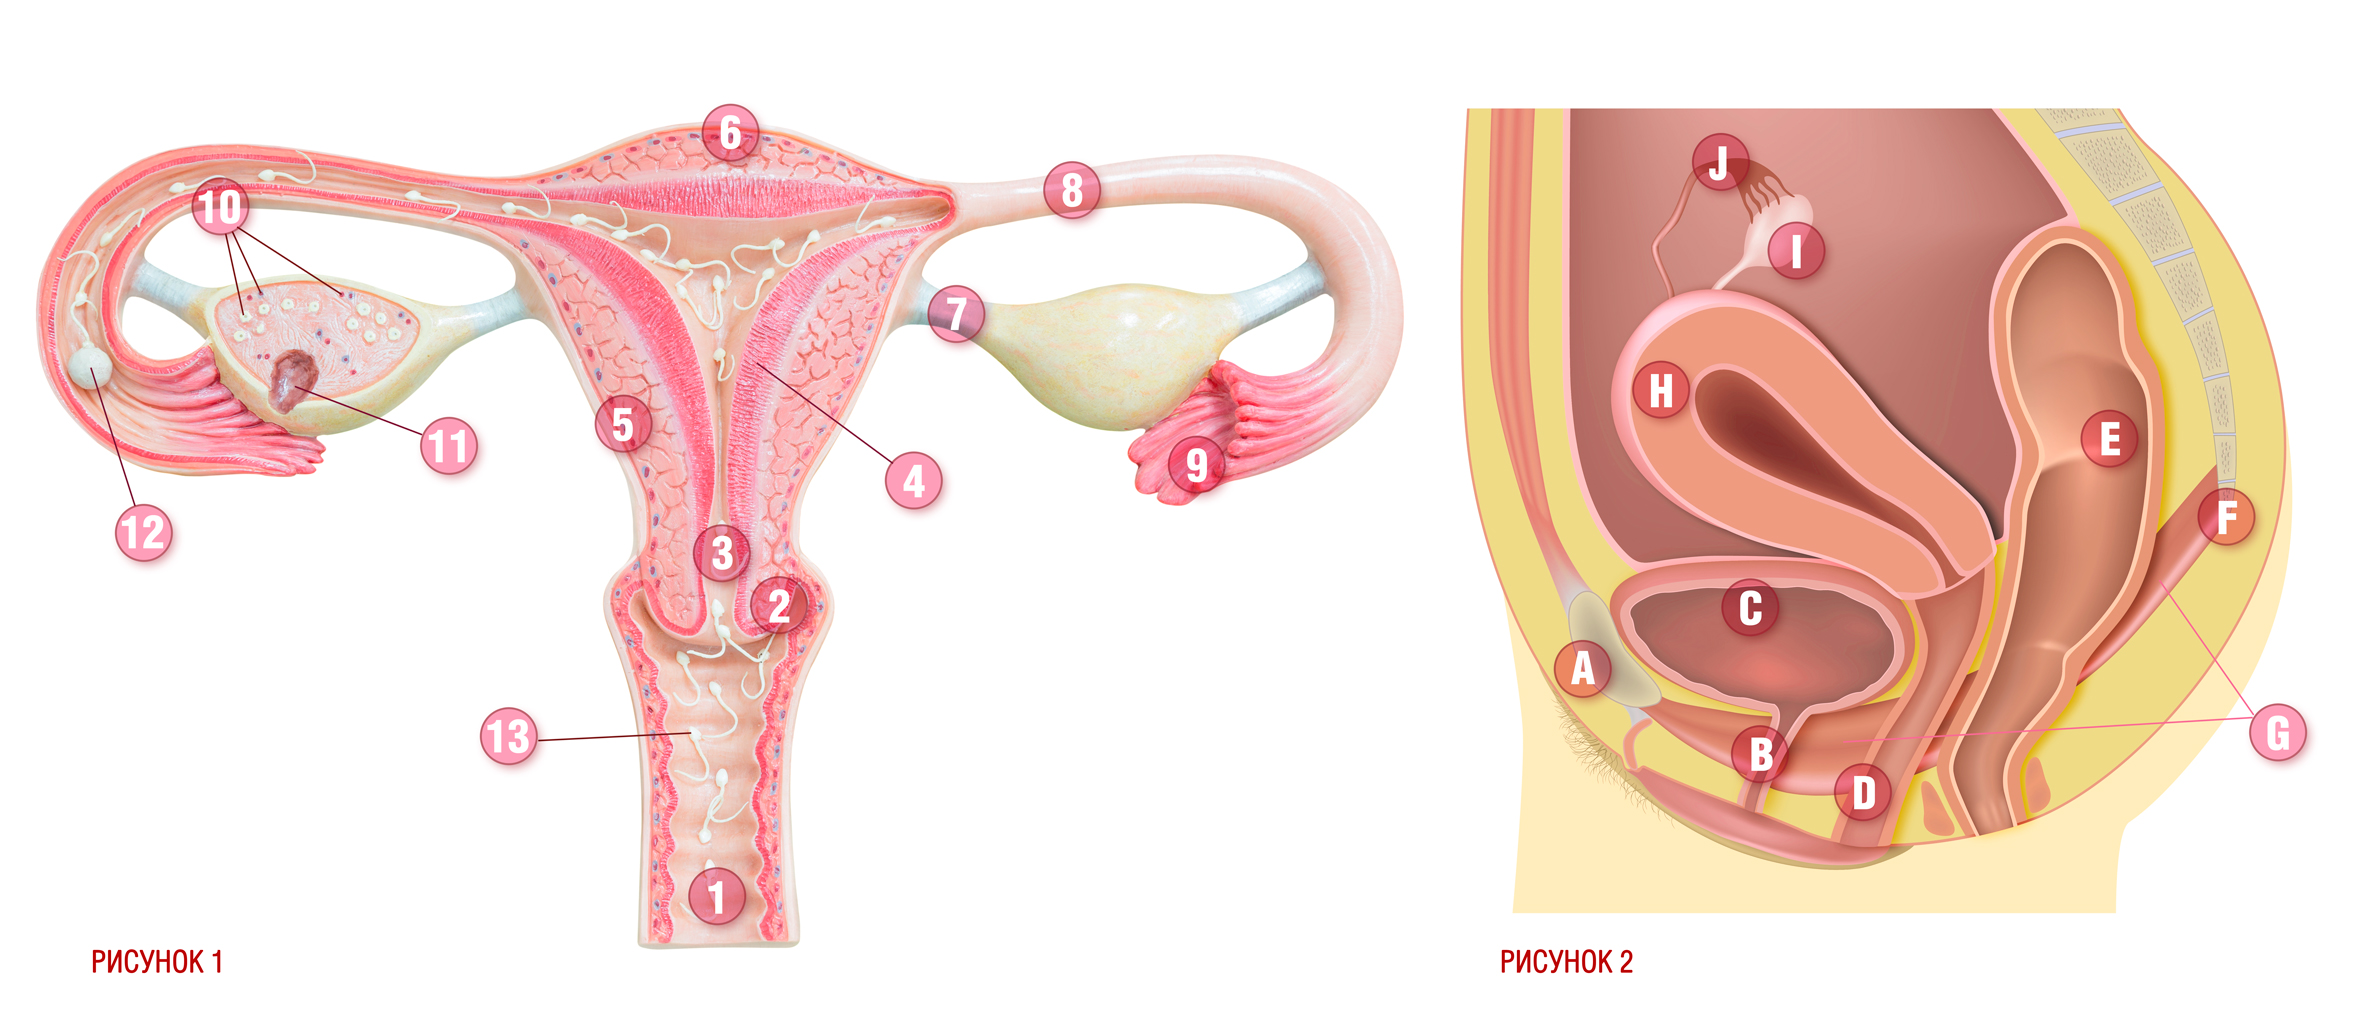 Репродуктивная женская половая система. Репродуктивная система анатомия матка. Анатомия матки женской репродуктивной системы.. Репродуктивные органы женщины. Женский организм матка.